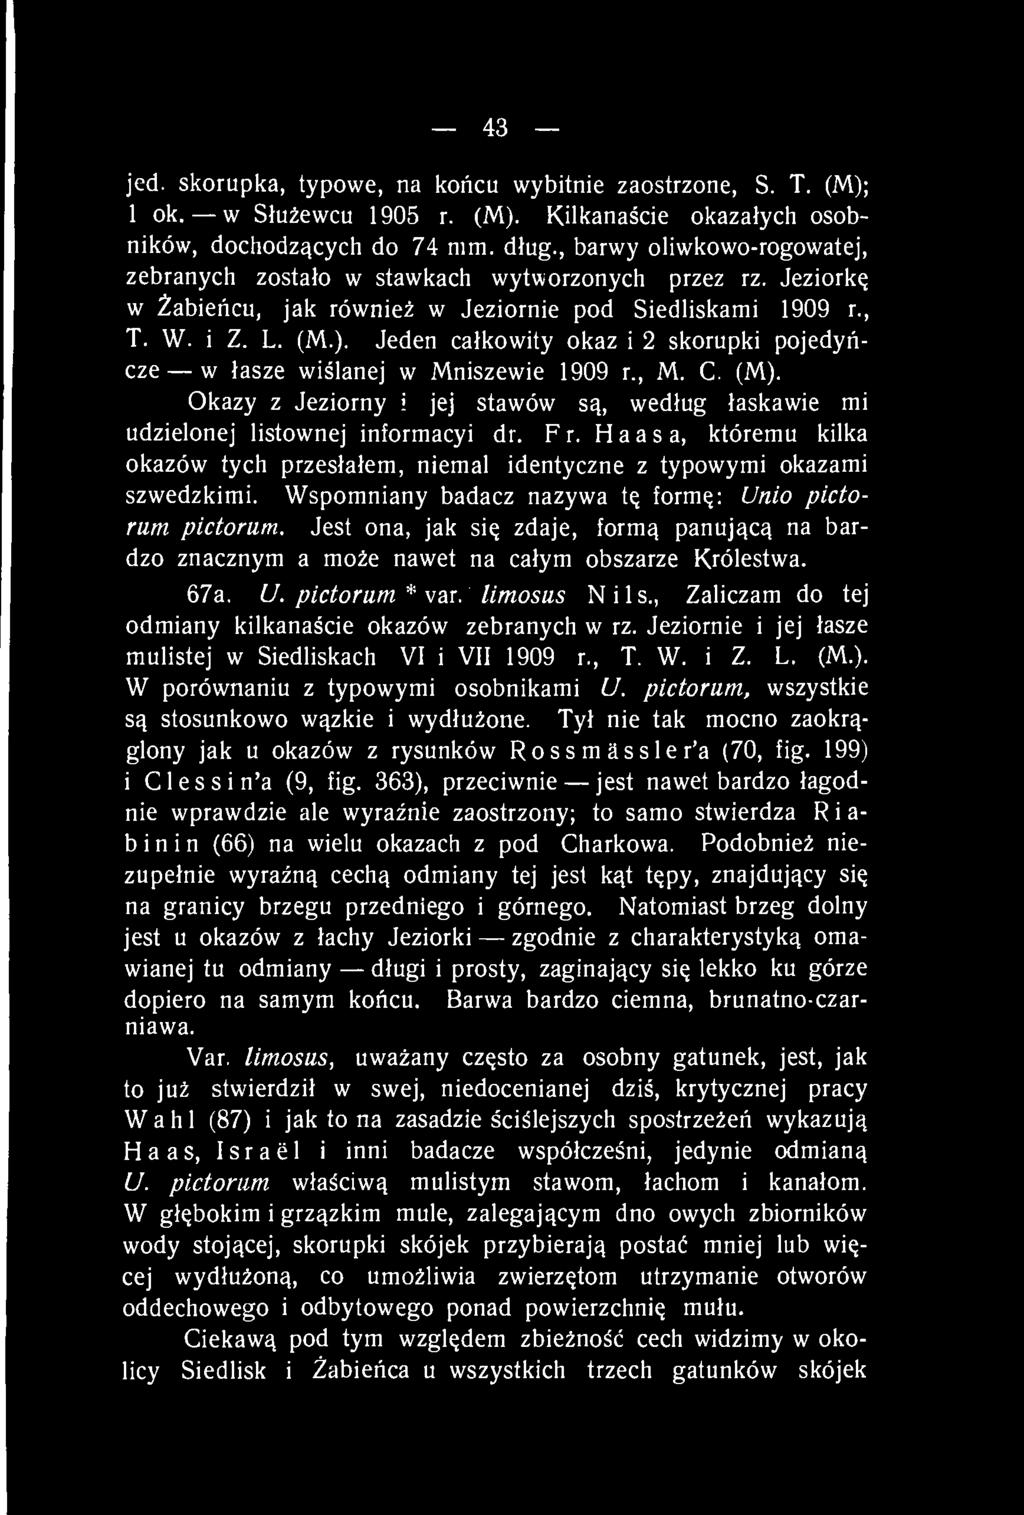 Jeden całkowity okaz i 2 skorupki pojedyńcze w łasze wiślanej w Mniszewie 1909 r., M. C. (M). Okazy z Jeziorny i jej stawów są, według łaskawie mi udzielonej listownej informacyi dr. Fr.